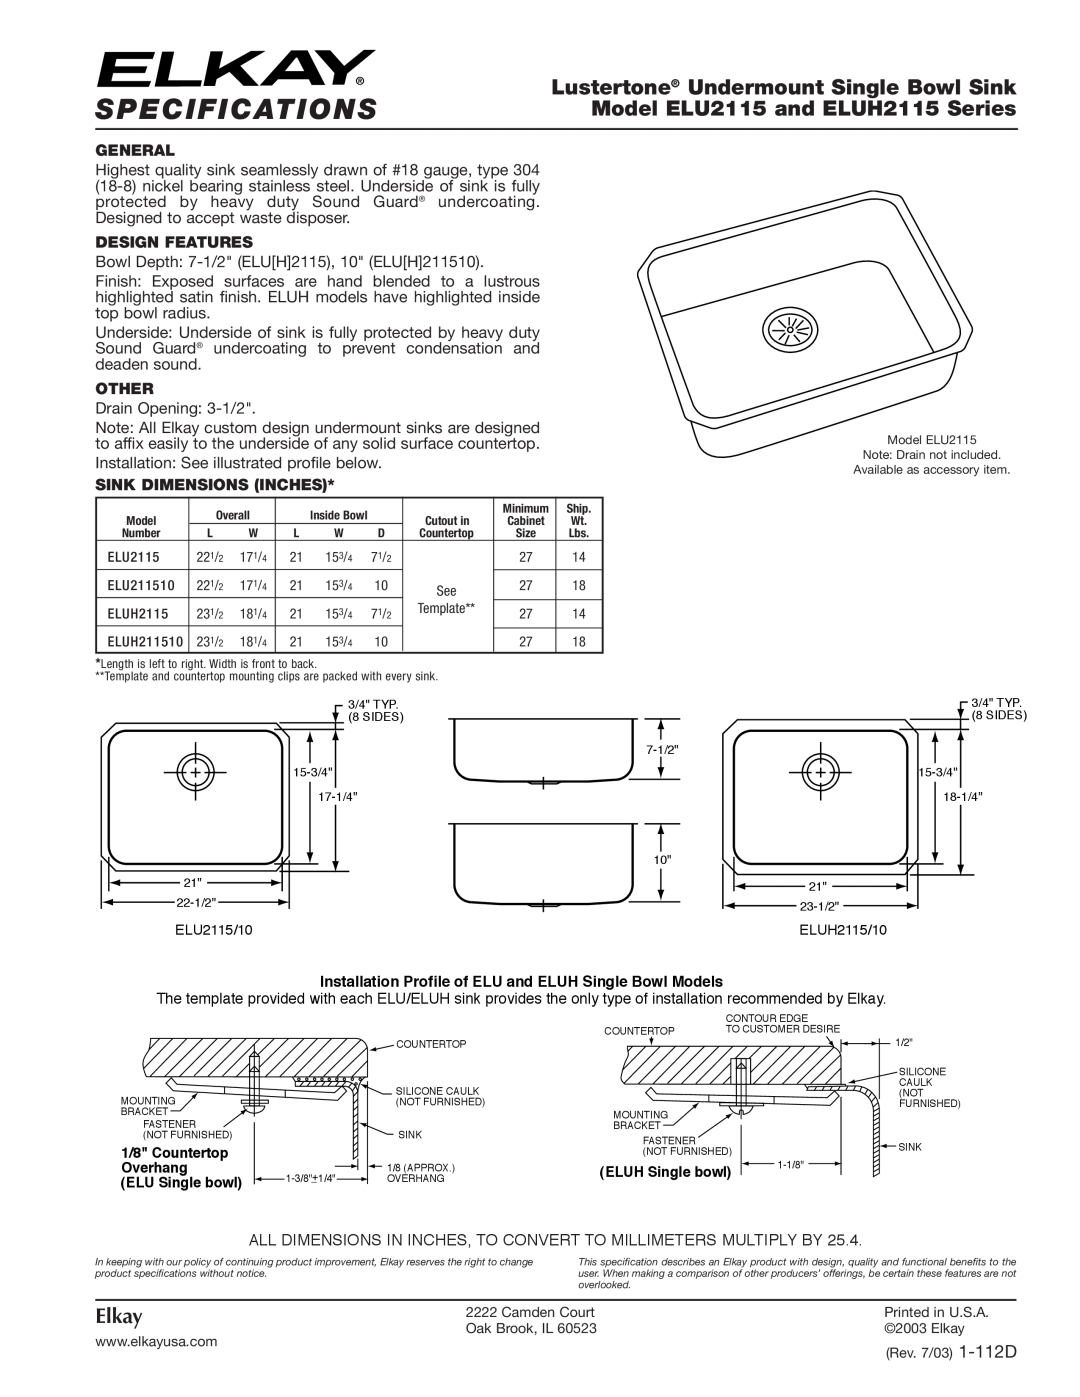 Elkay ELUH2115 Series specifications Specifications, Lustertone Undermount Single Bowl Sink, Elkay, General, Other 